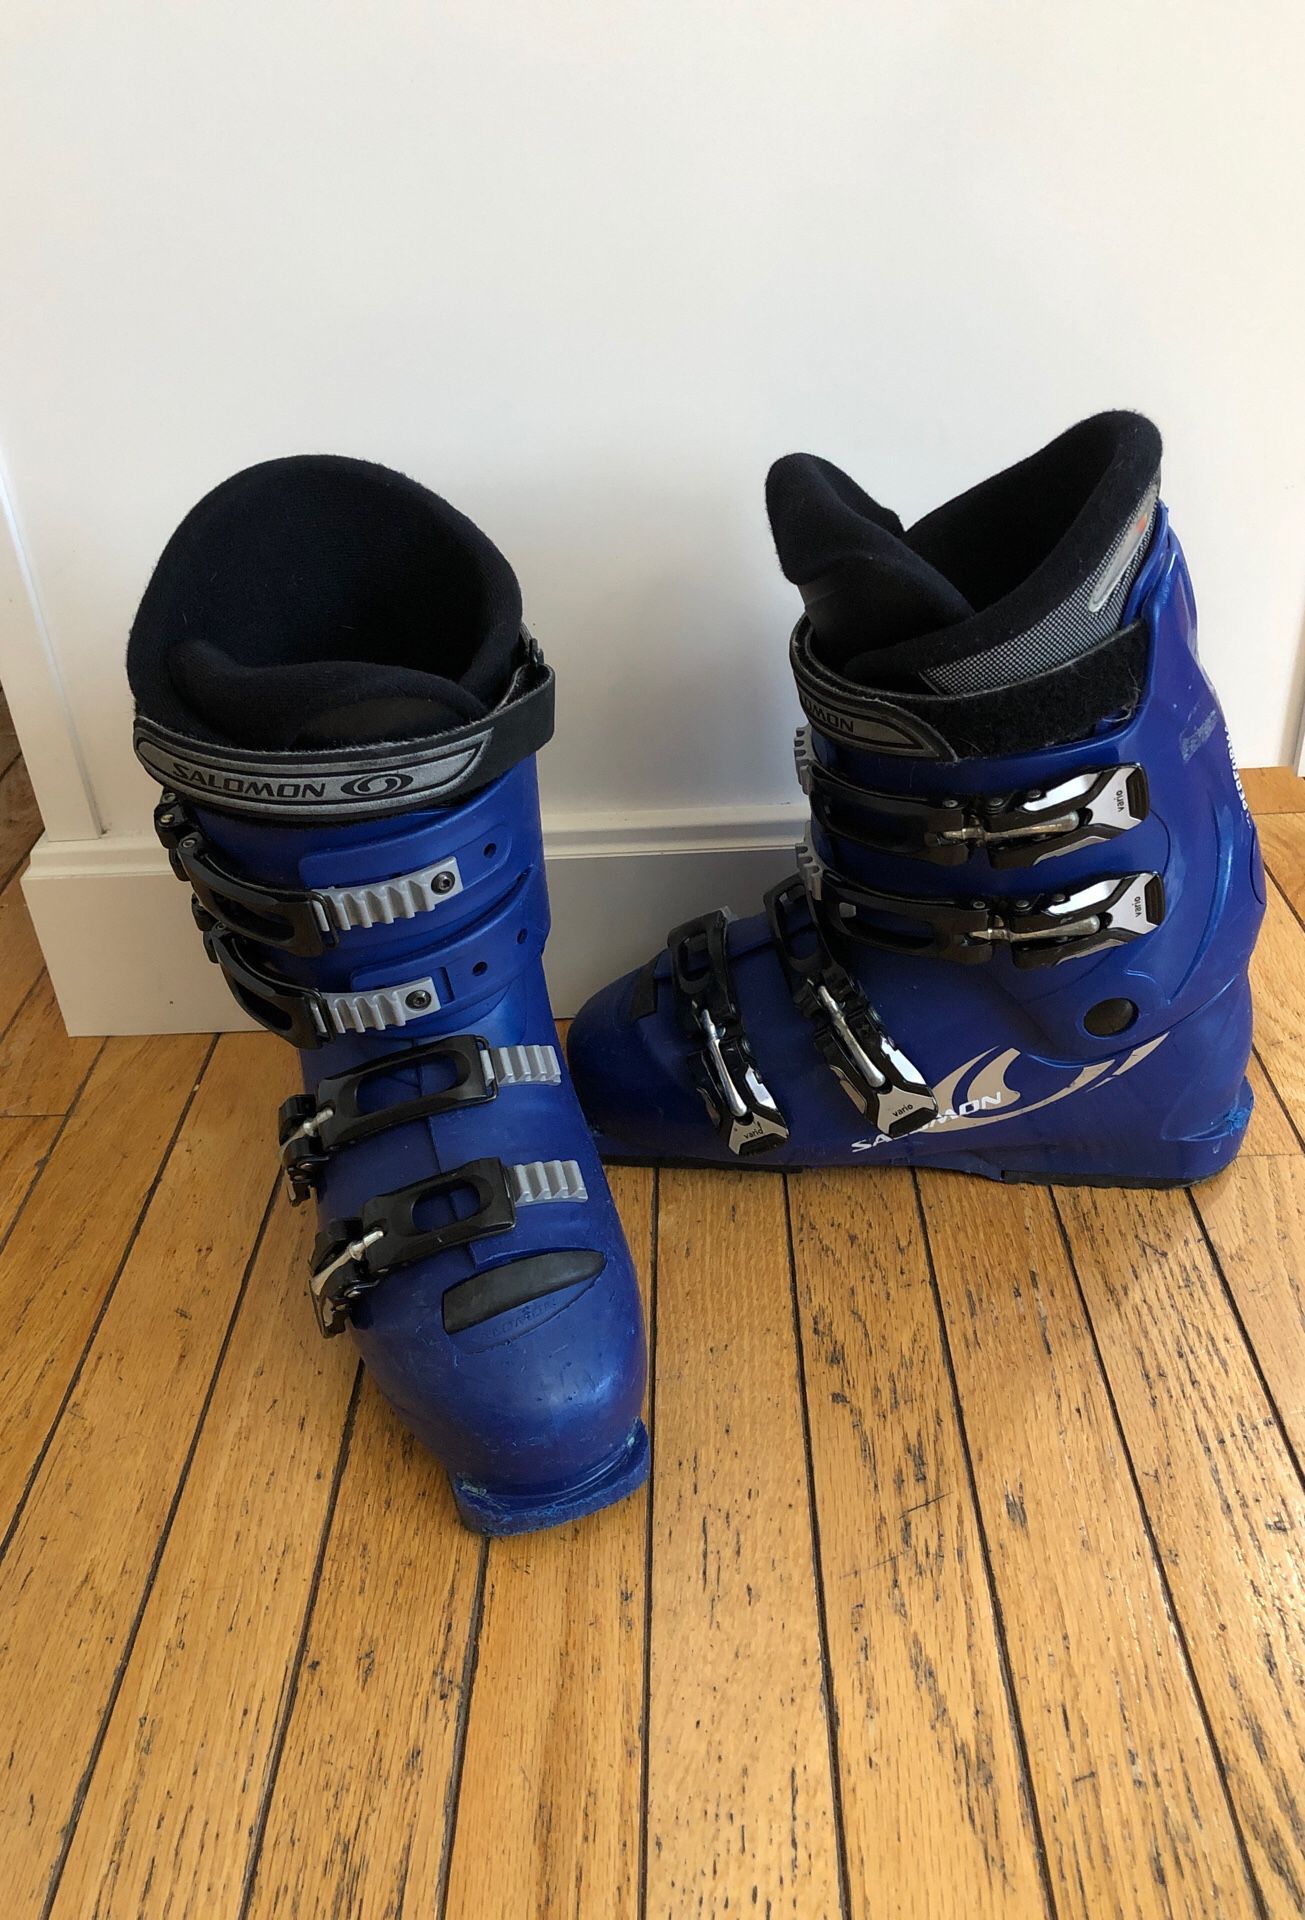 Salomon ski boots men’s Size 8.5